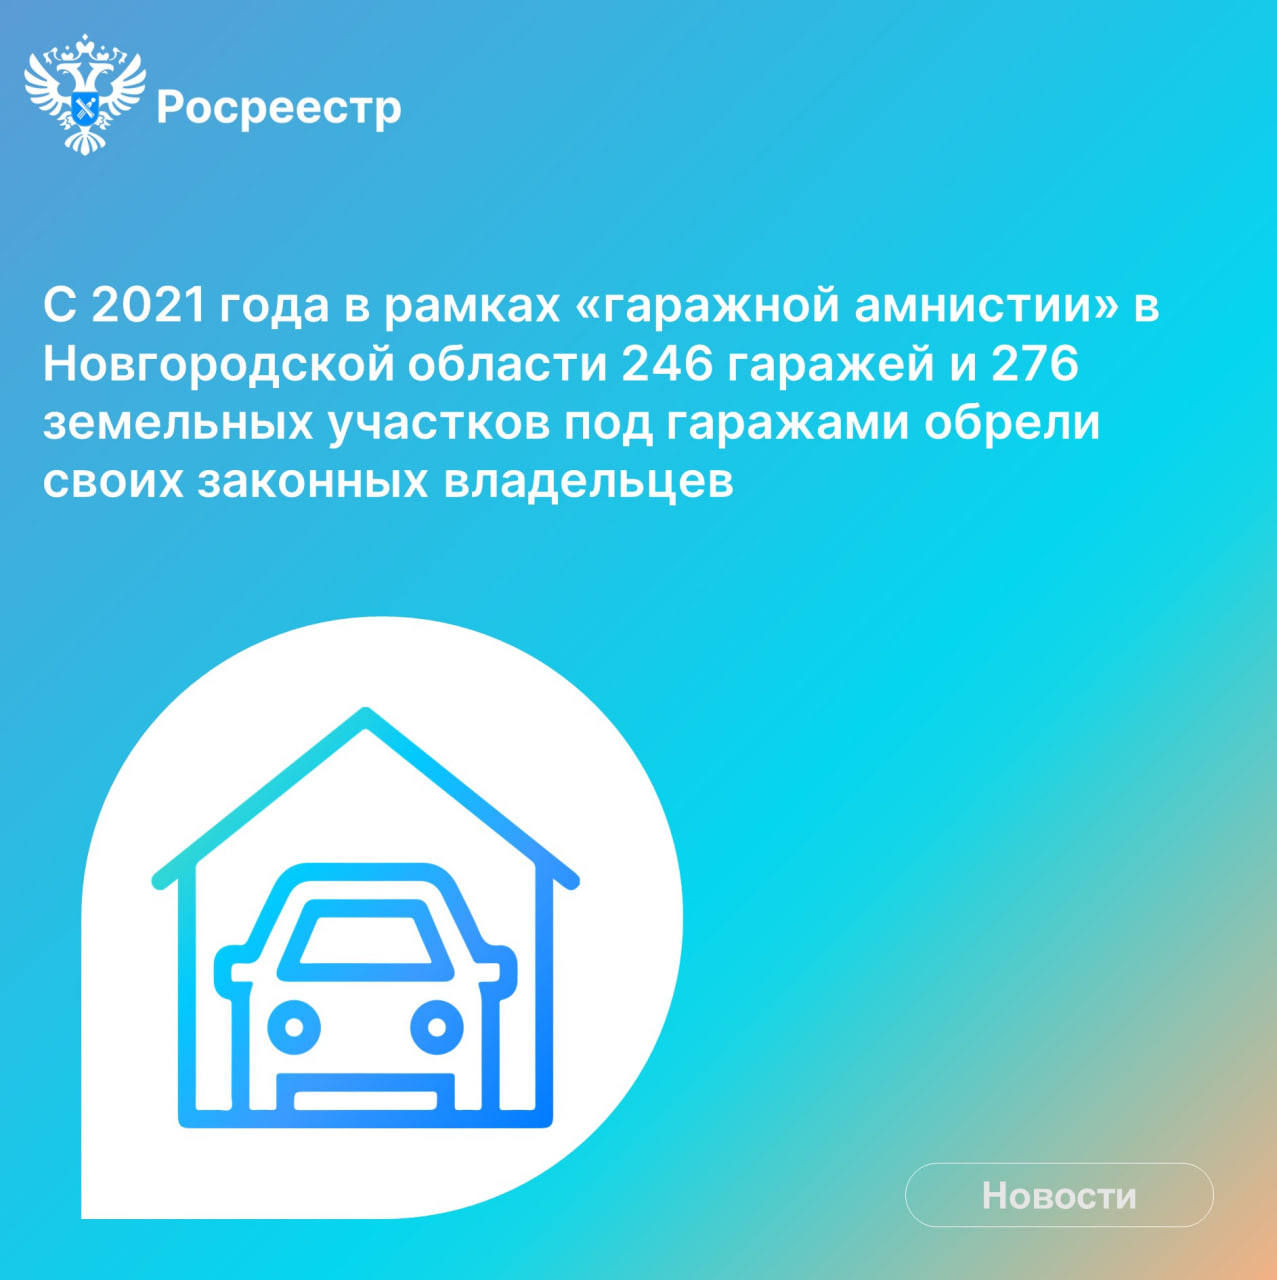 В Новгородской области с 2021 года легализовали почти 250 гаражей.